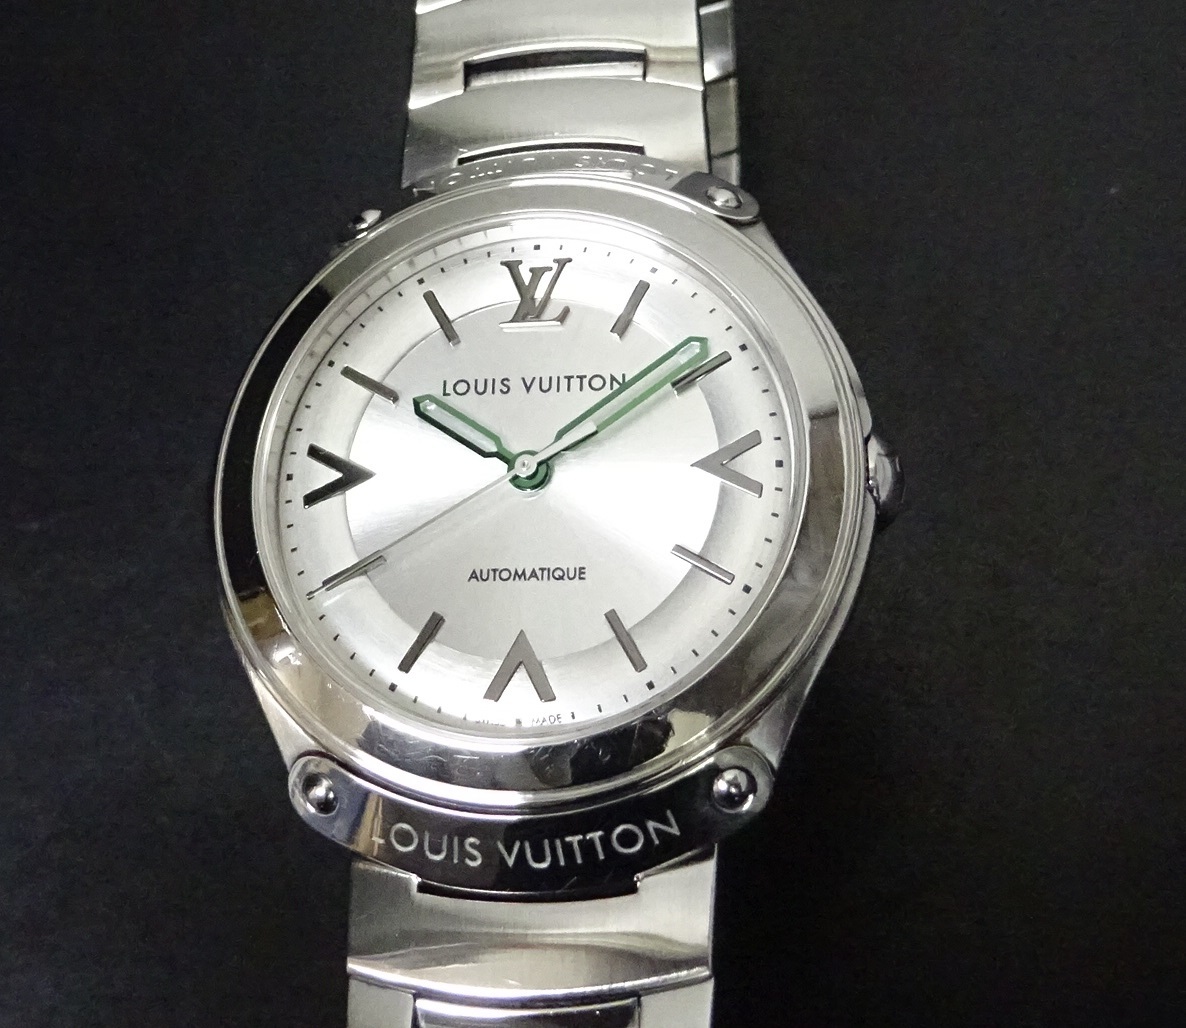  Osaka Hill тонн покупка LOUIS VUITTON Louis Vuitton fifti пять Q6G200 самозаводящиеся часы мужской международный письменная гарантия есть оригинальный внутри наружная коробка есть подлинный товар 